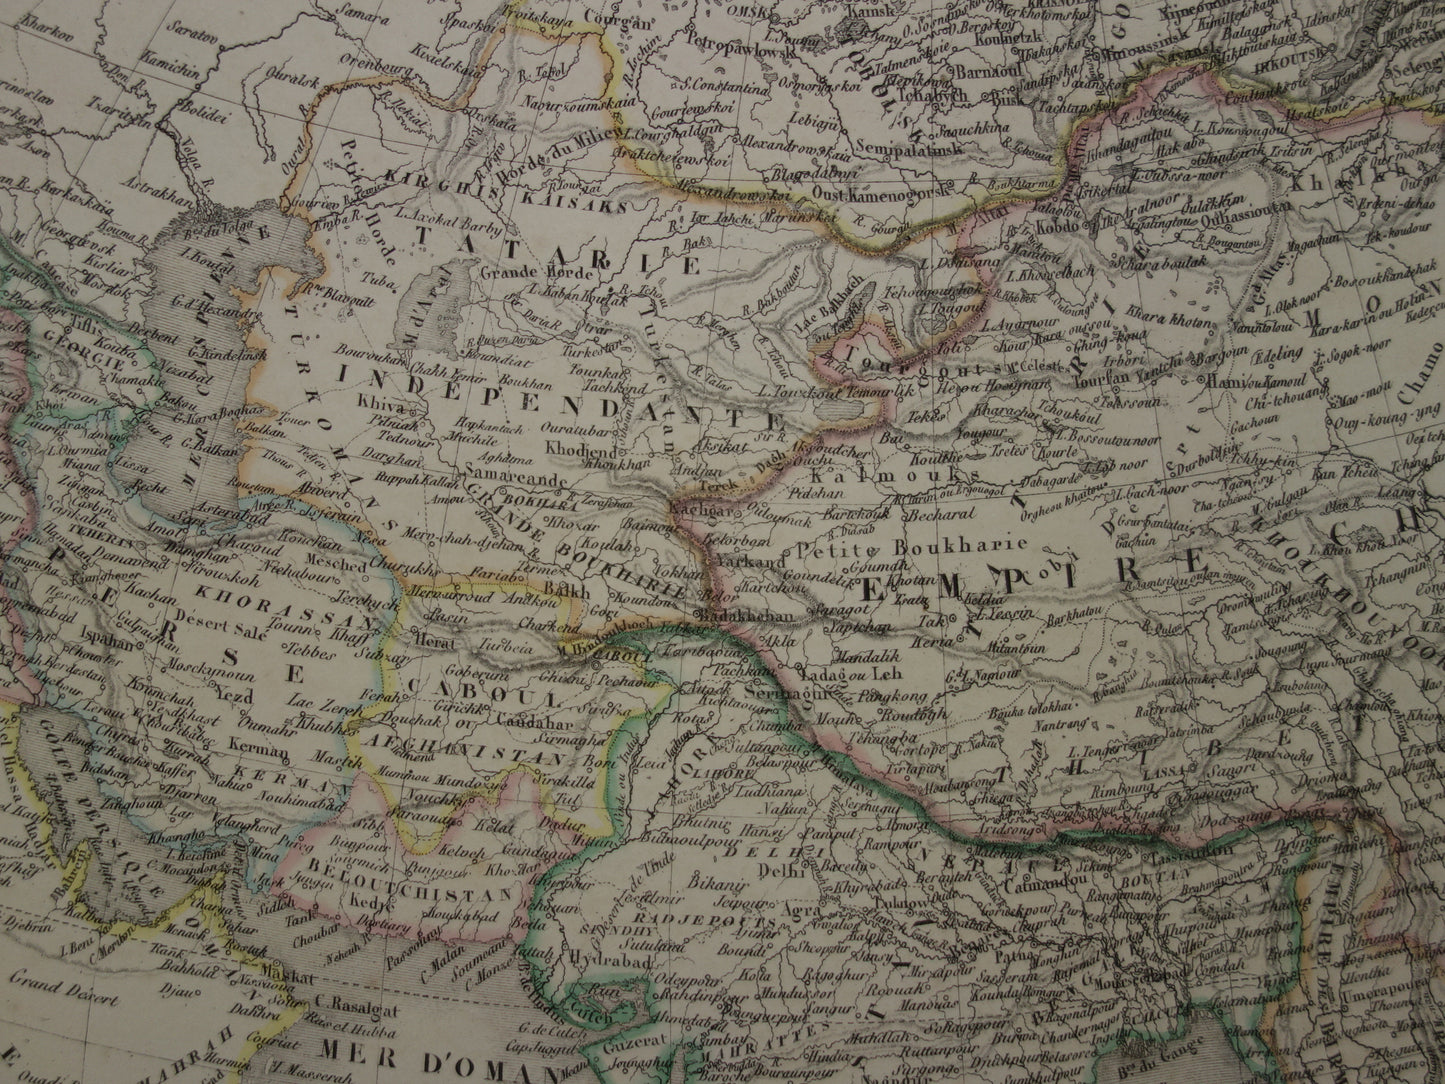 Prachtige antieke kaart van AZIË uit 1851 Grote originele oude handgekleurde landkaart 51 x 69 met jaartal te koop vintage landkaarten van continent Azie